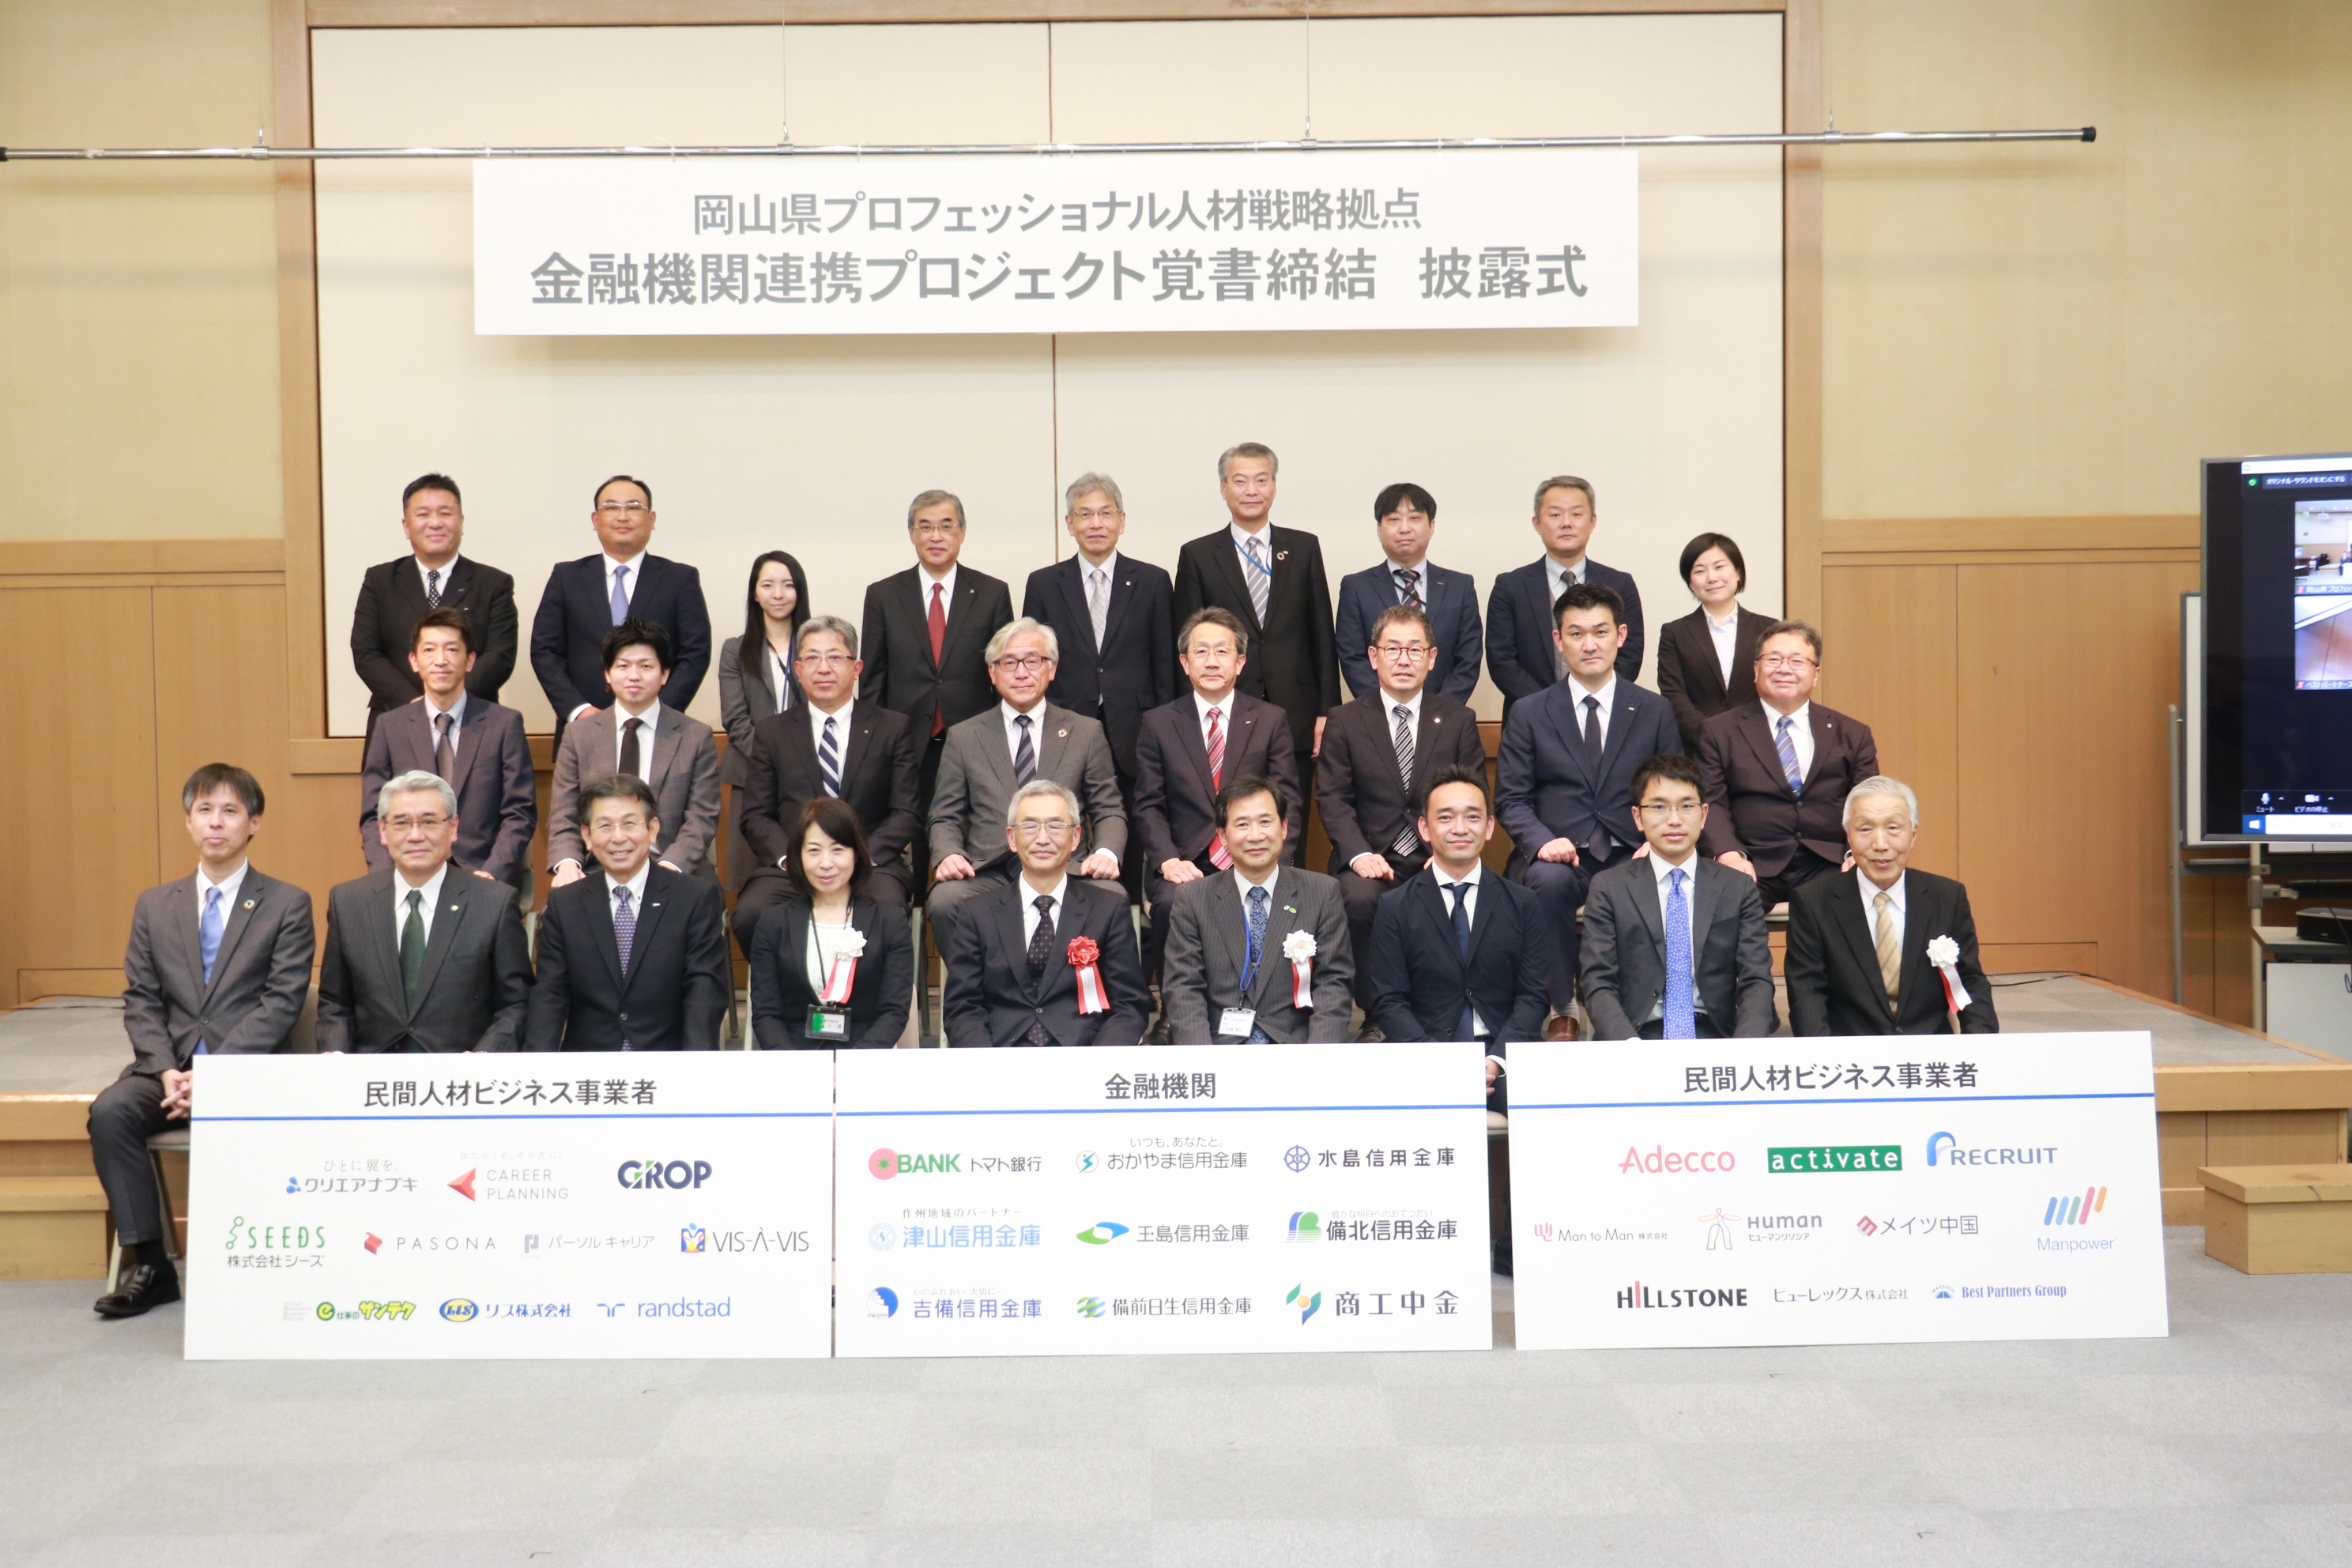 「岡山県プロフェッショナル人材戦略拠点における金融機関連携プロジェクト」への参加および覚書の締結について